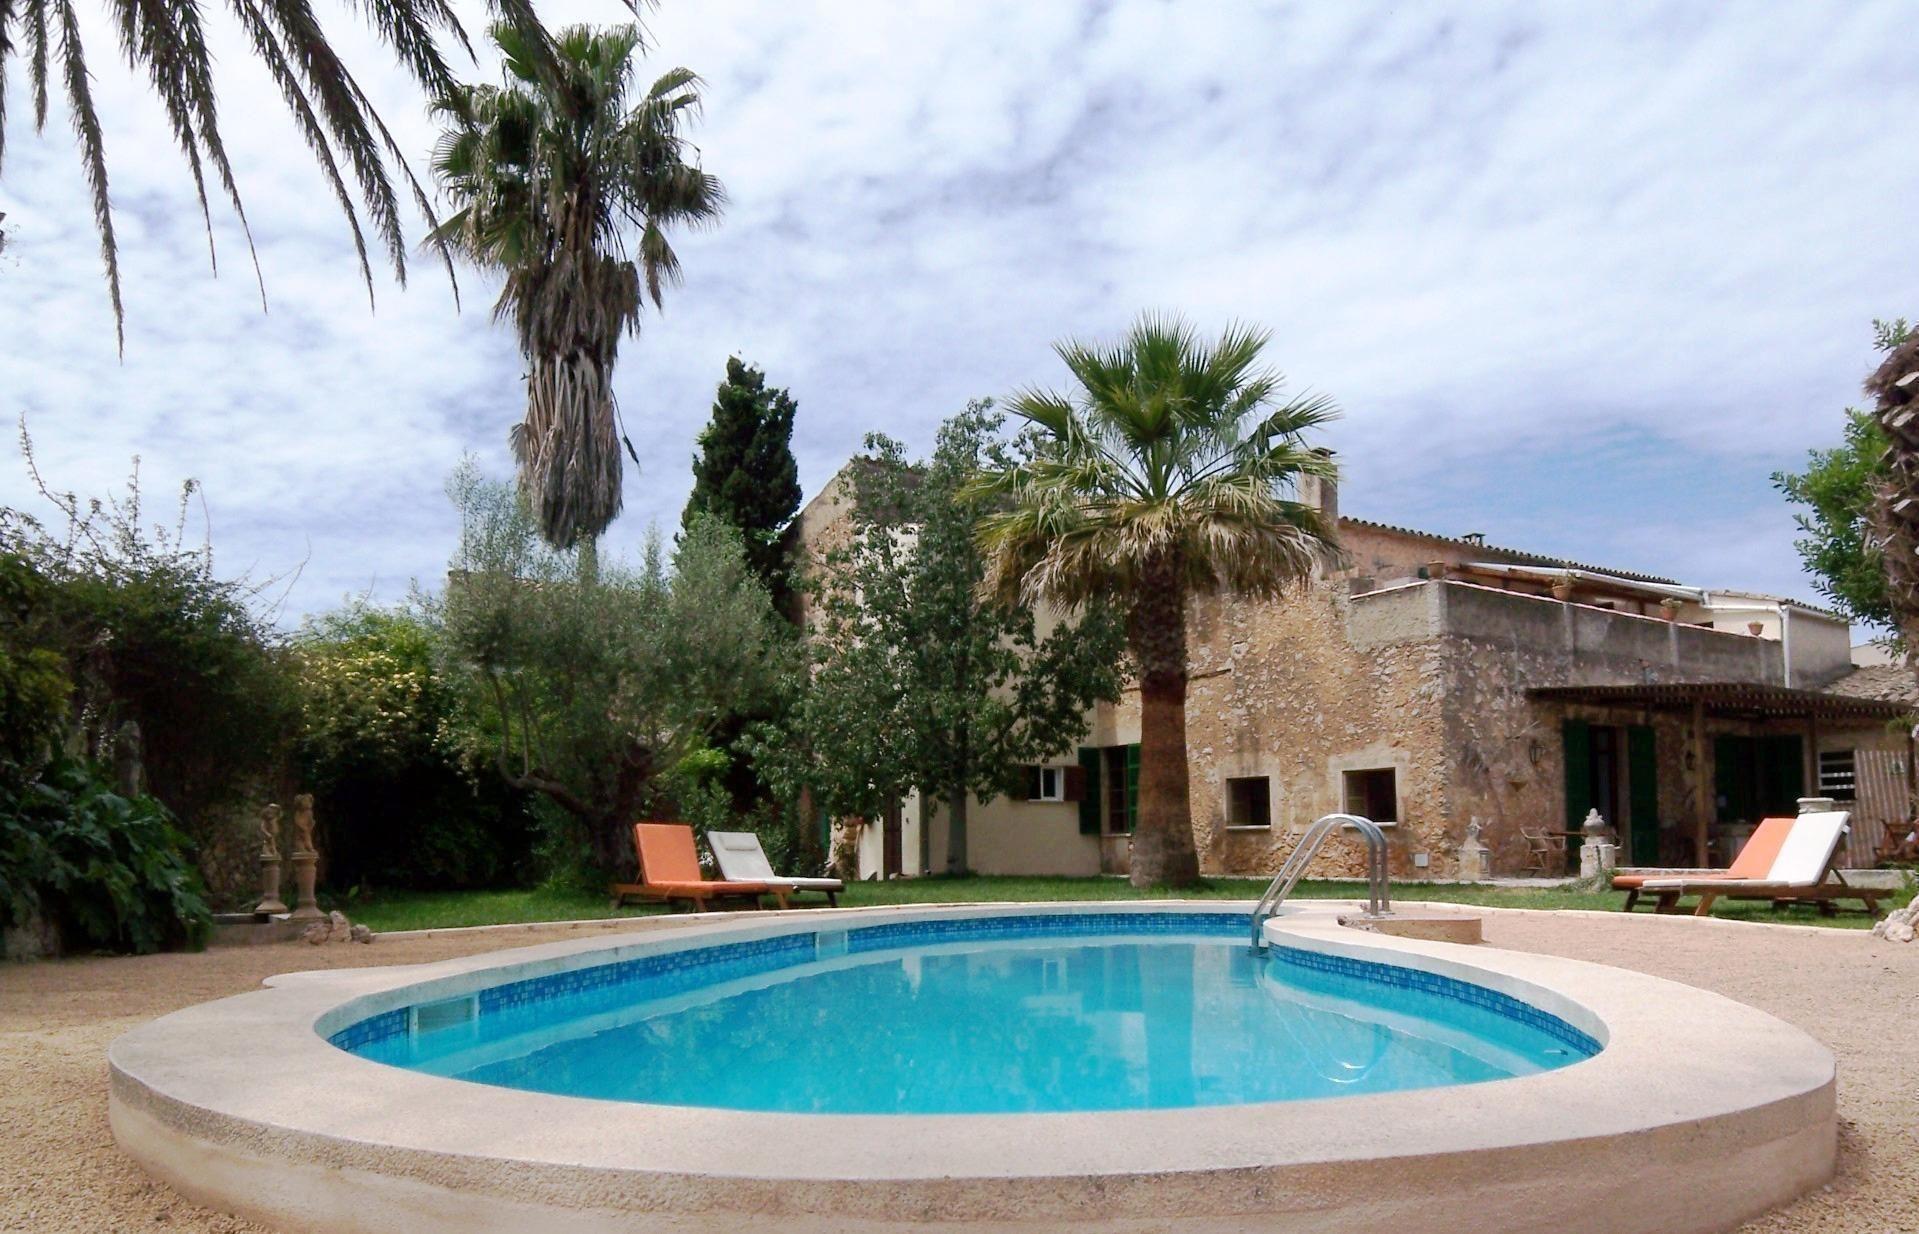 Ferienwohnung für 4 Personen ca. 135 m²  Ferienwohnung  Mallorca